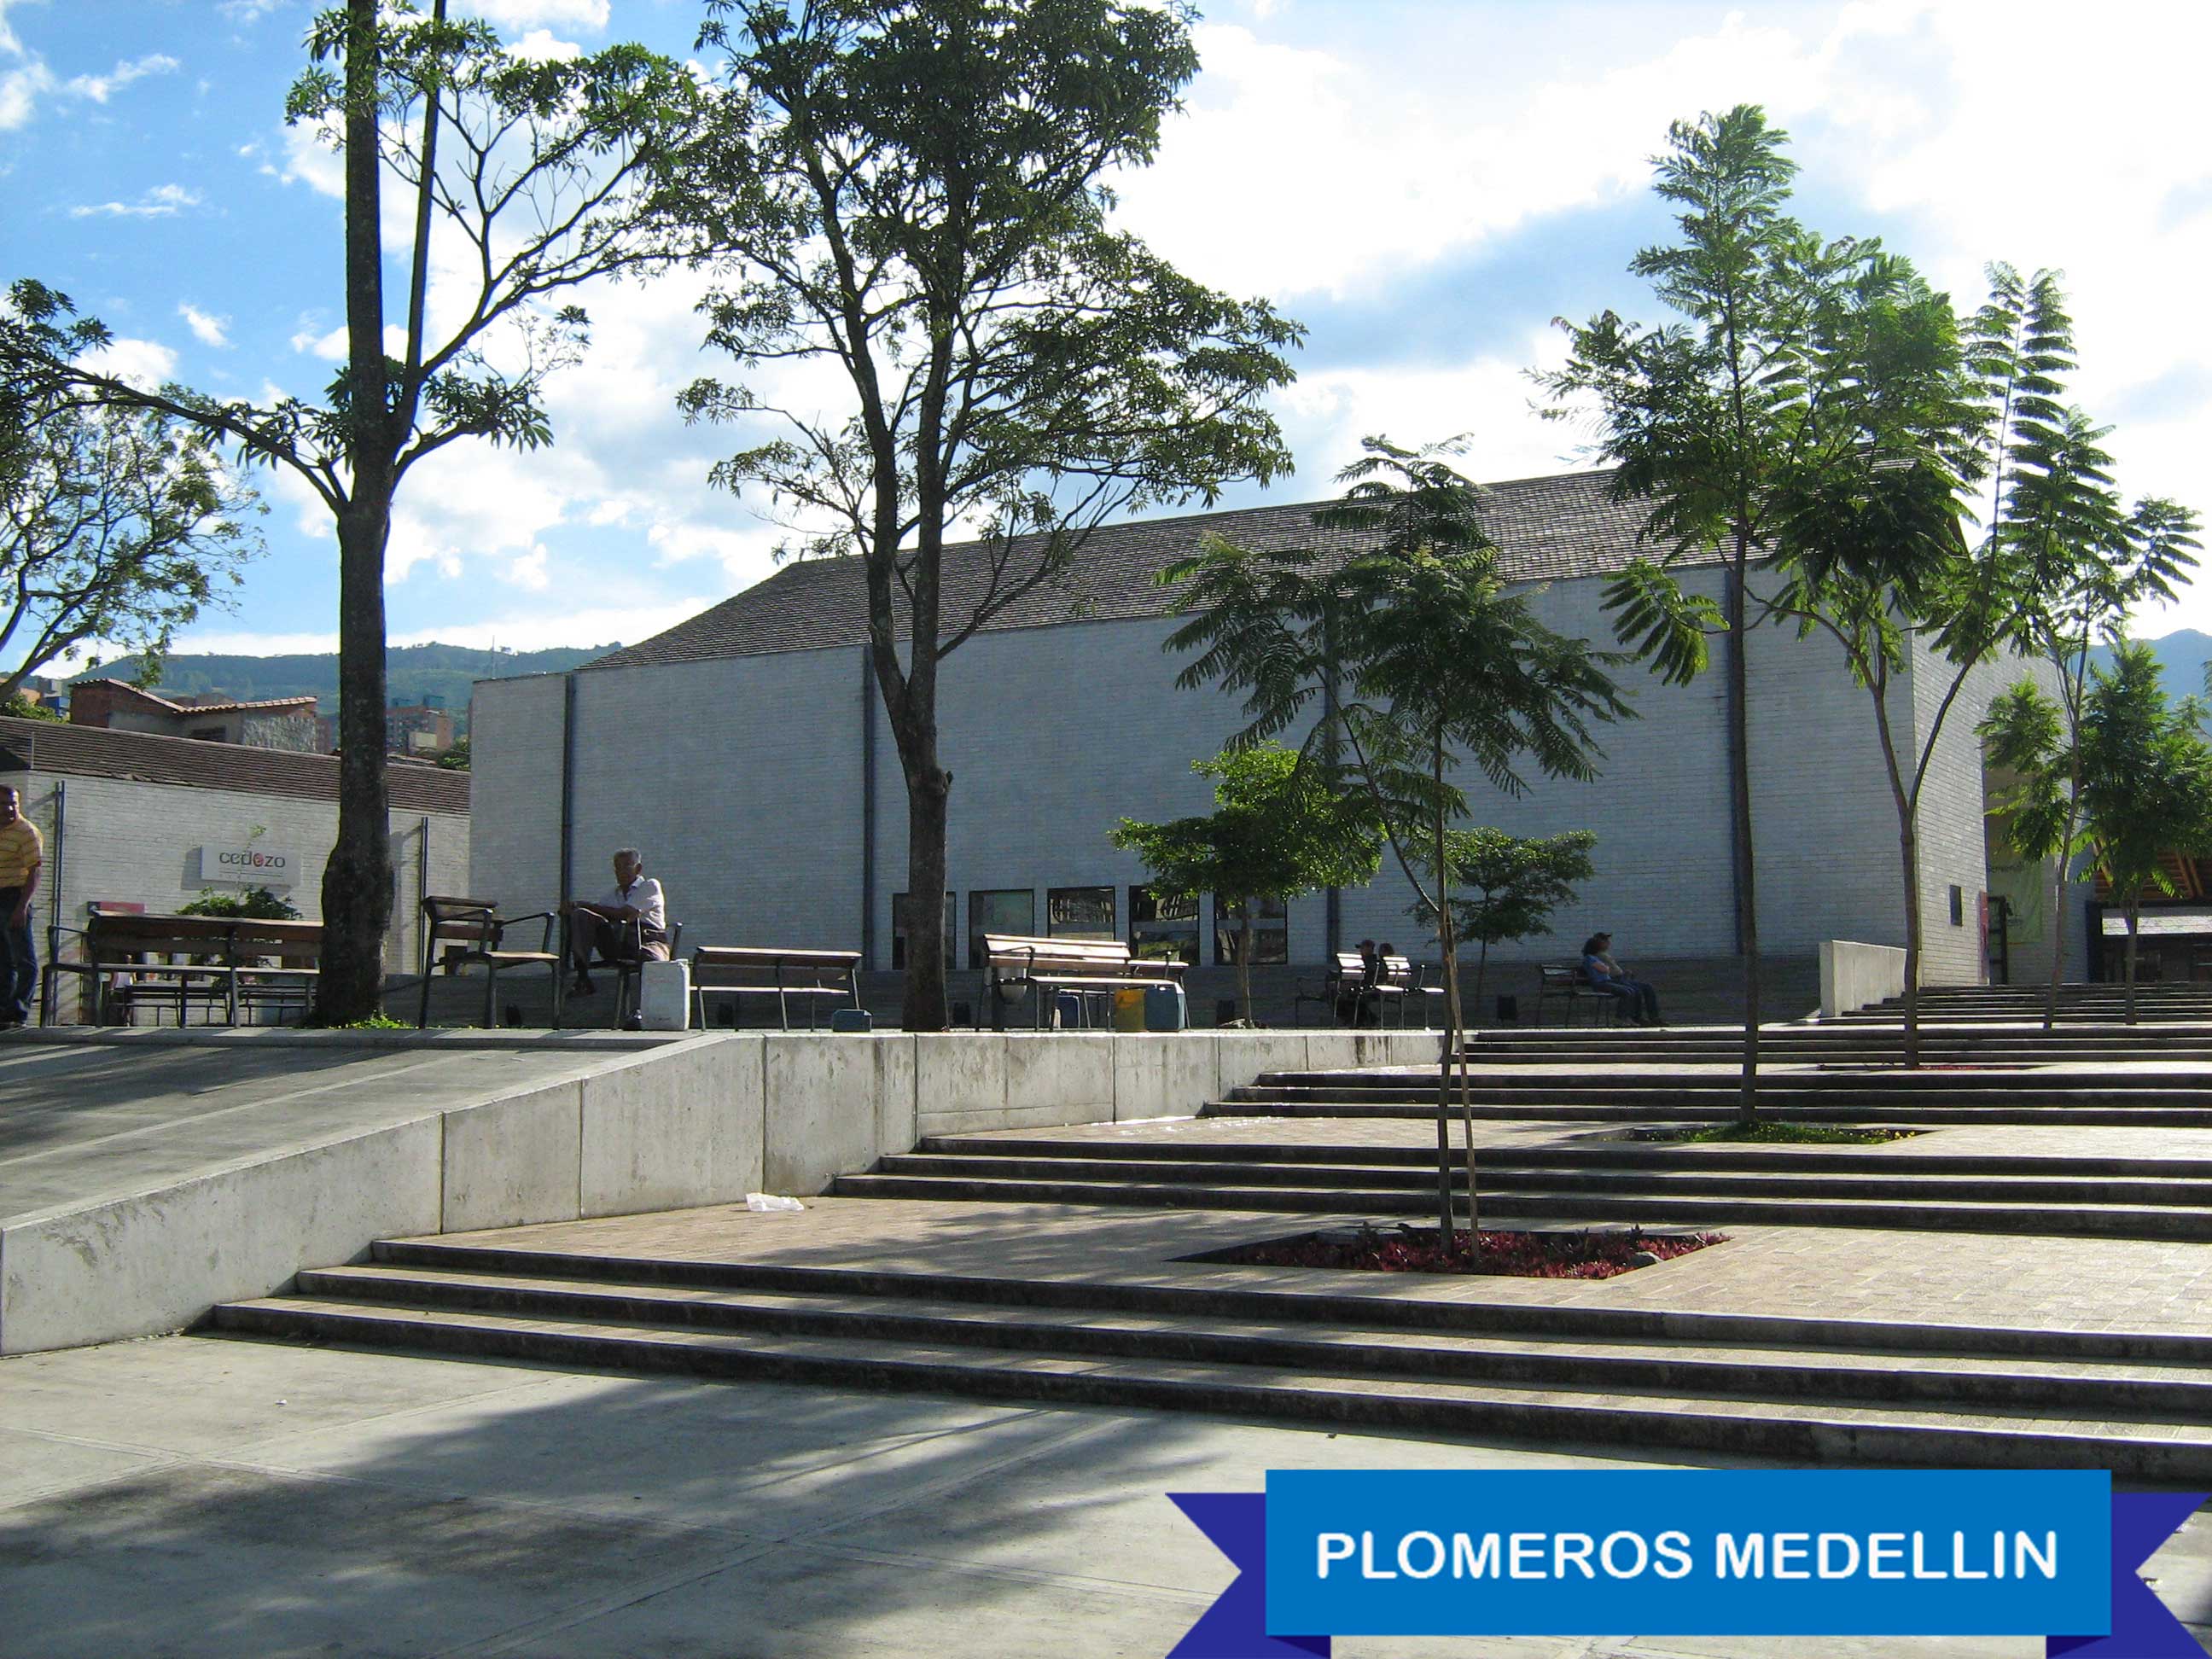 Servicio de plomeria en Medellín - Belén.